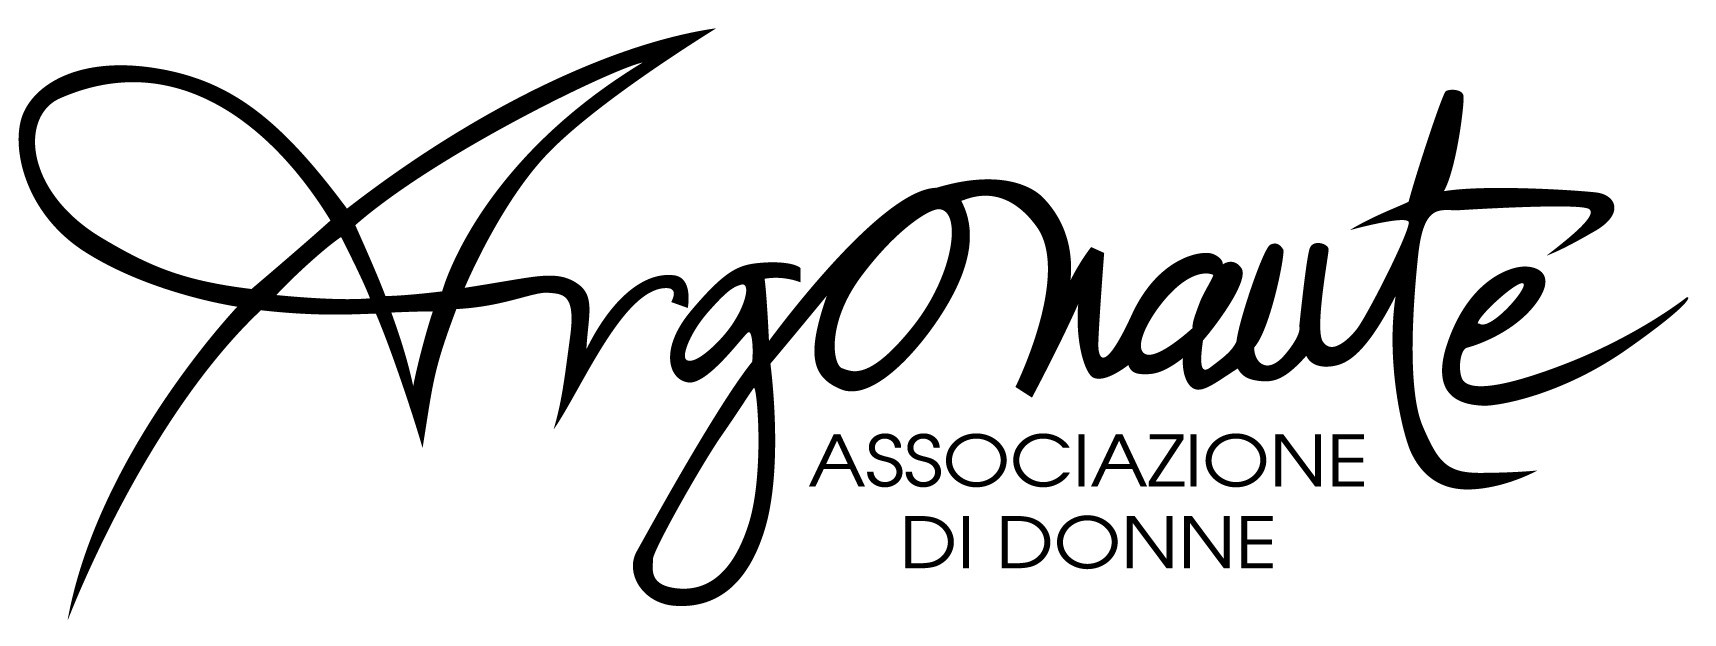 logo_argonaute_ufficiale.jpg